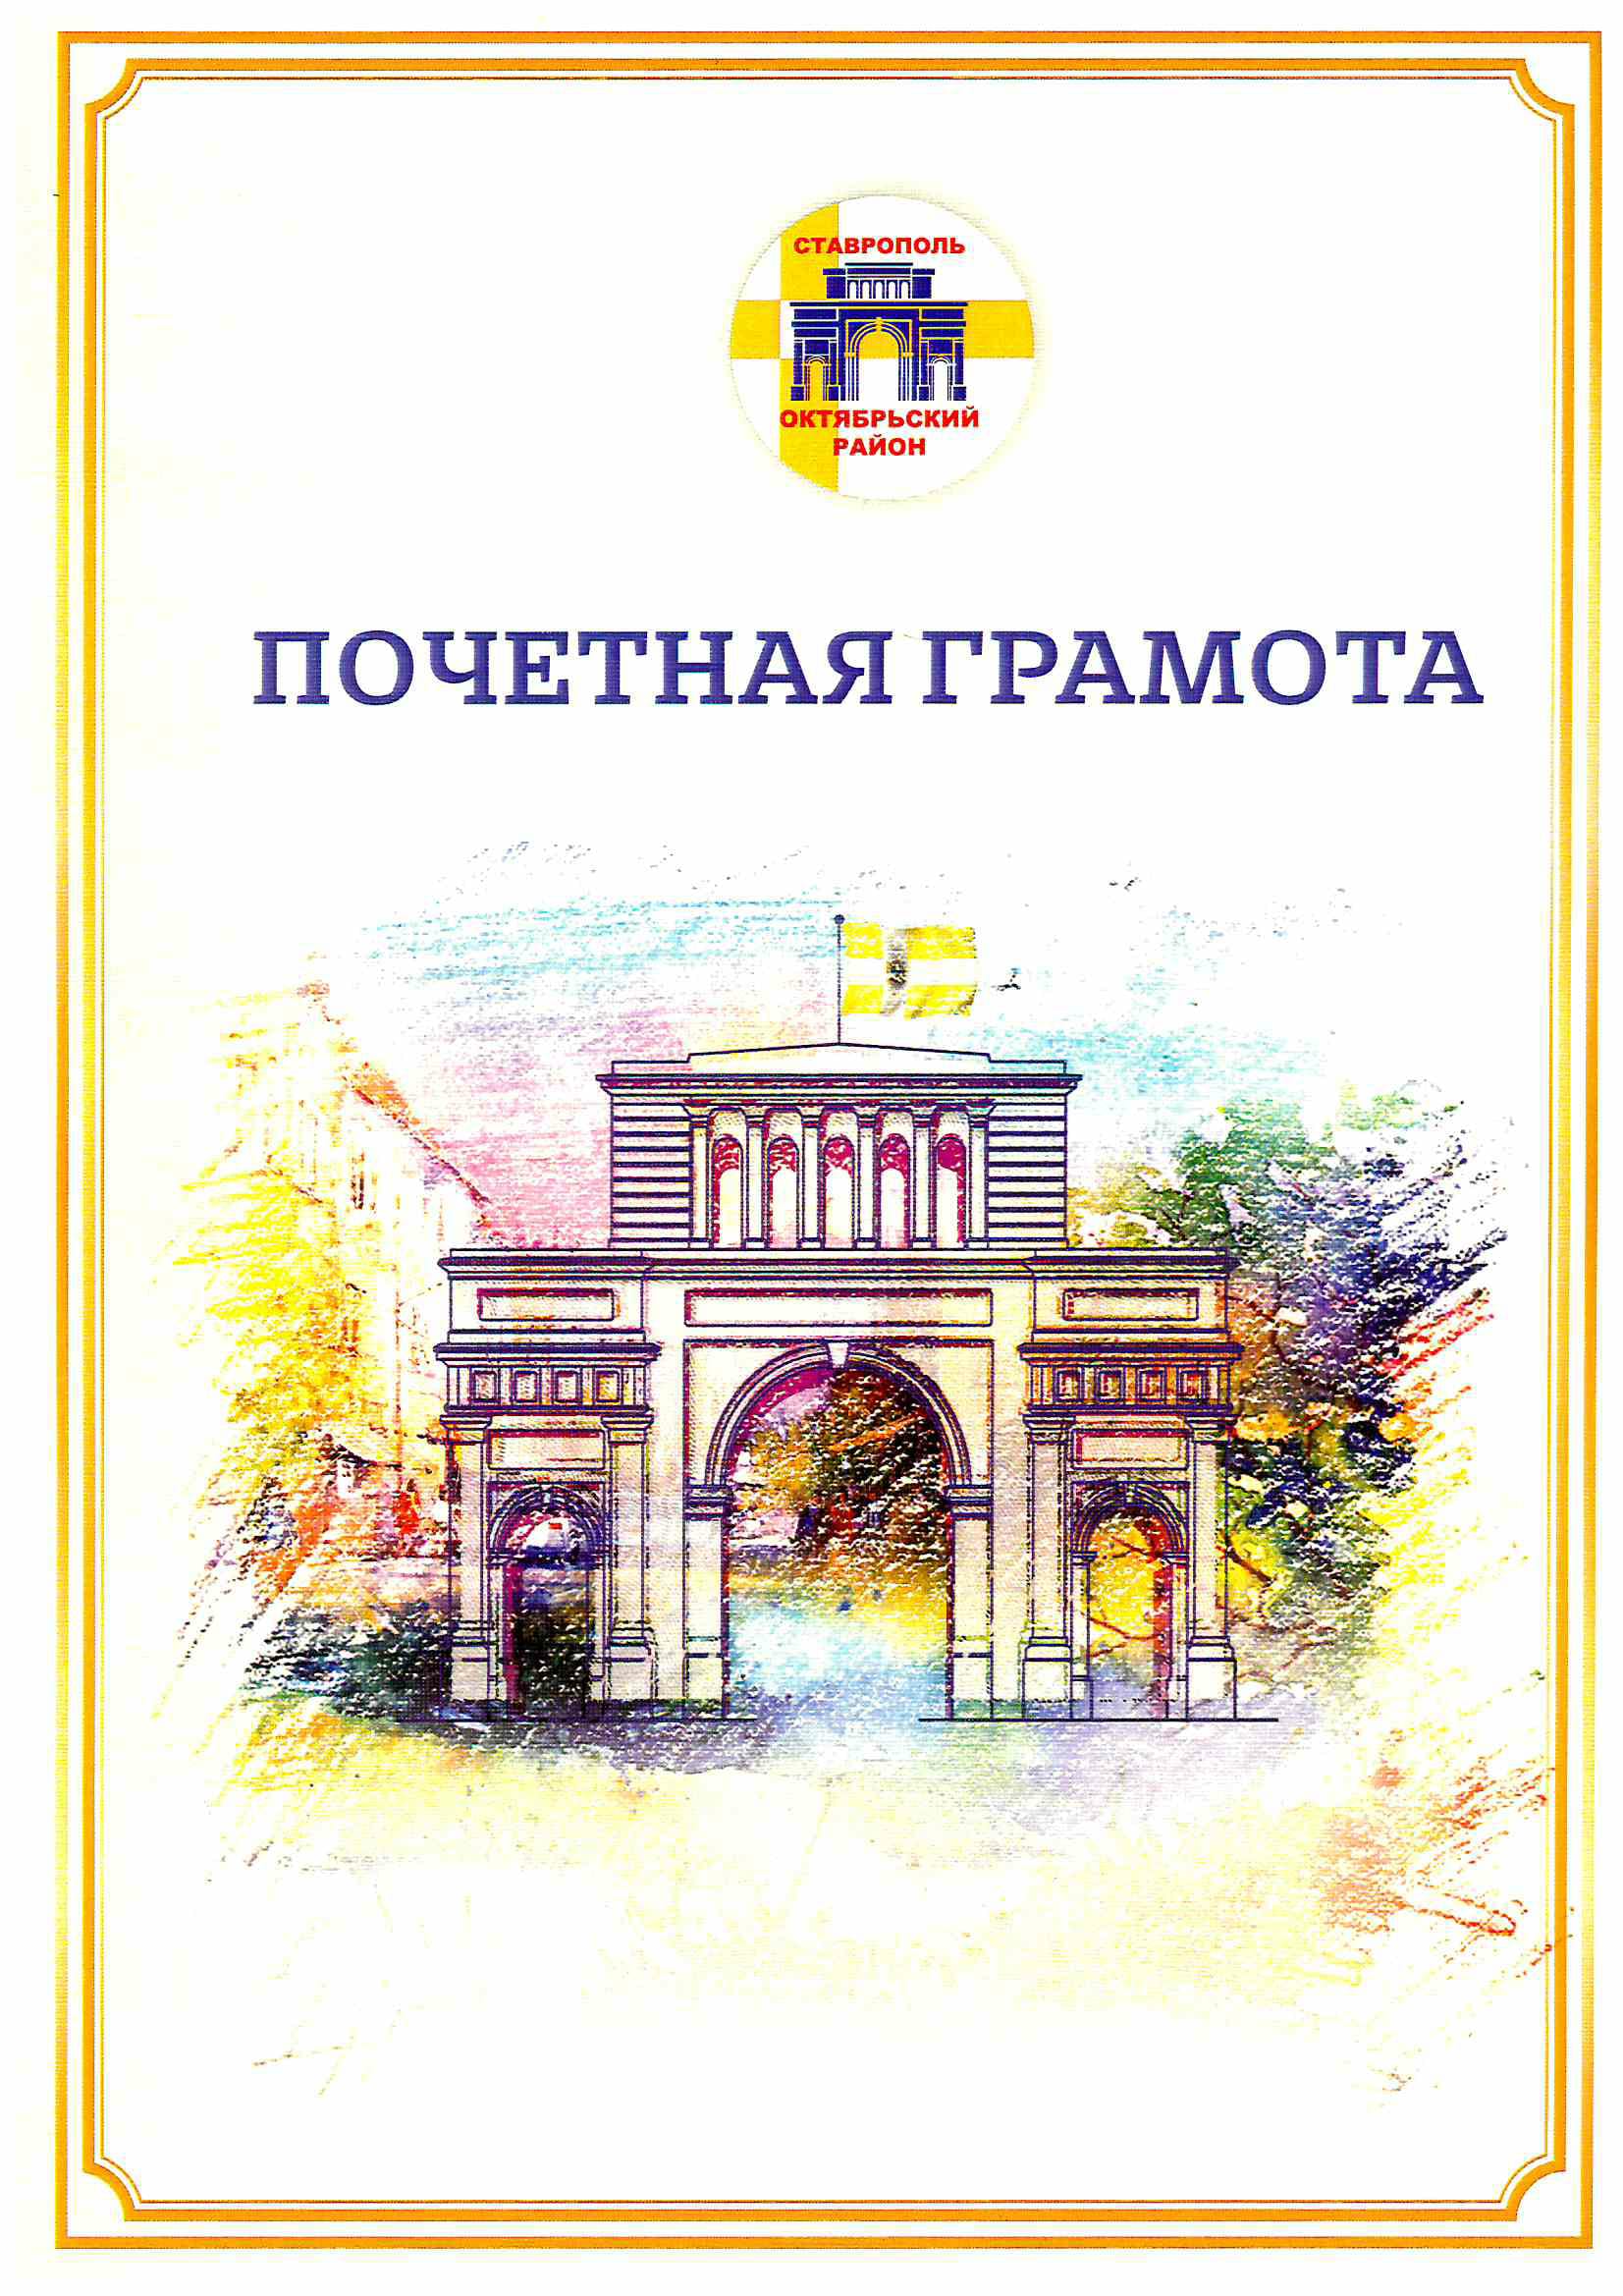 Kozlova cover